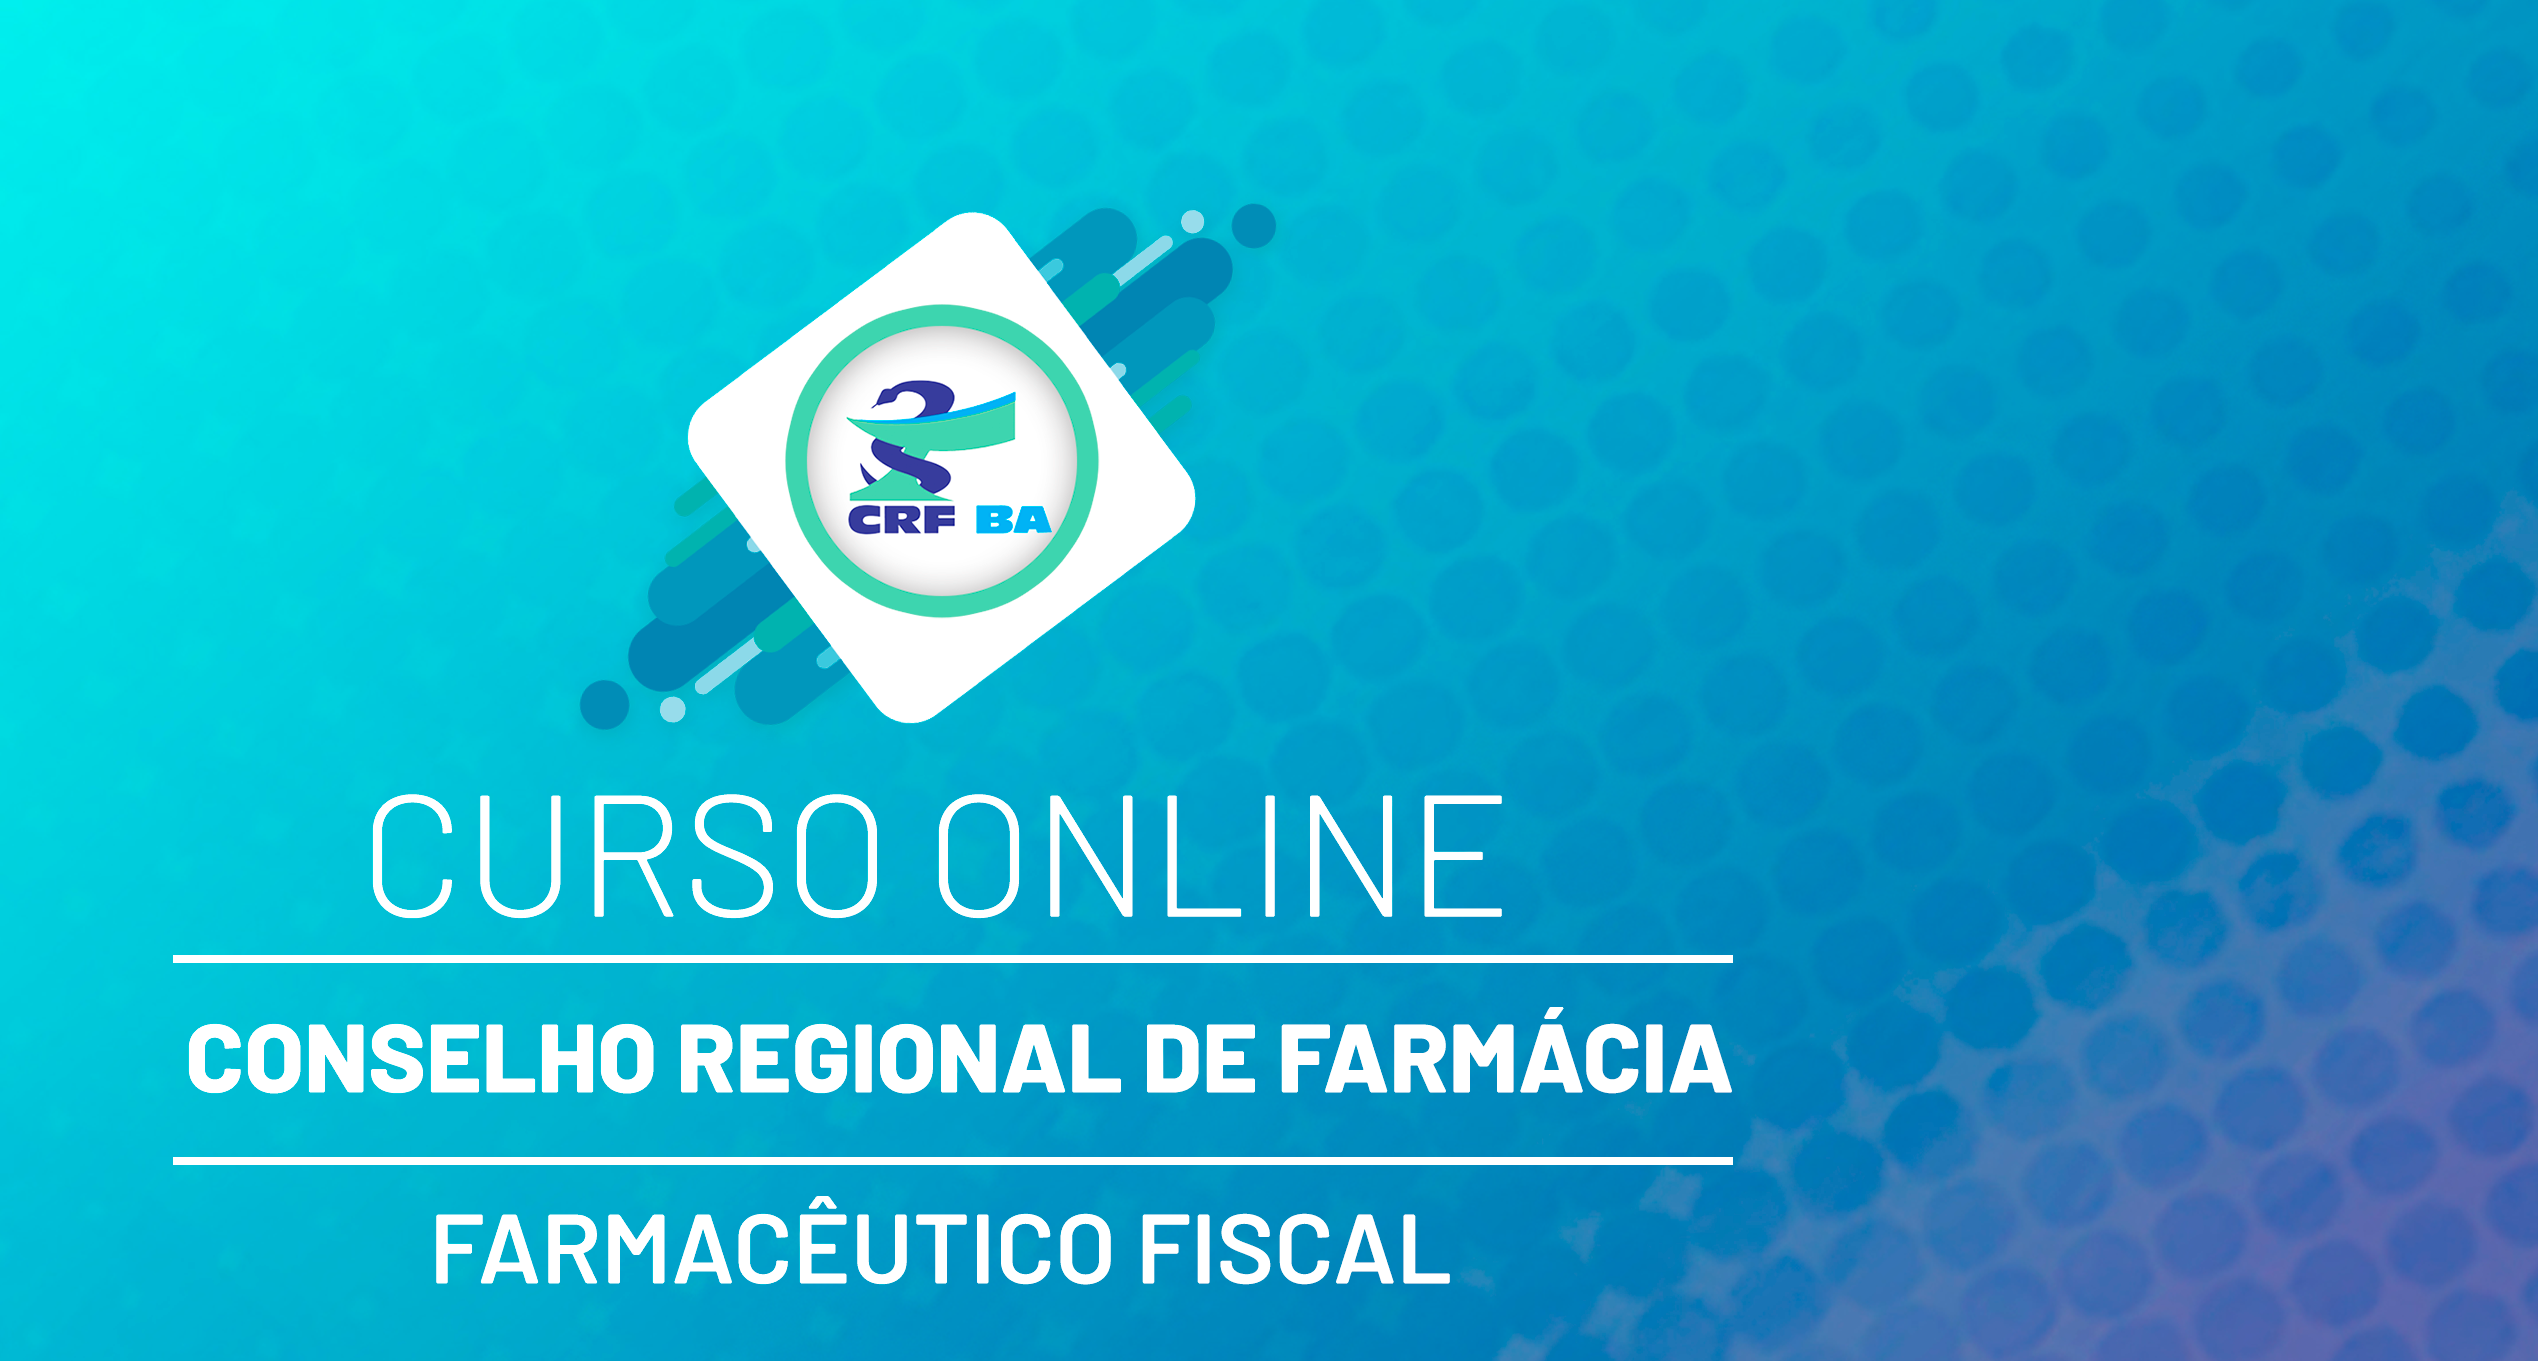 CRF - Conselho Regional de Farmácia - Nível Superior - Farmacêutico Fiscal